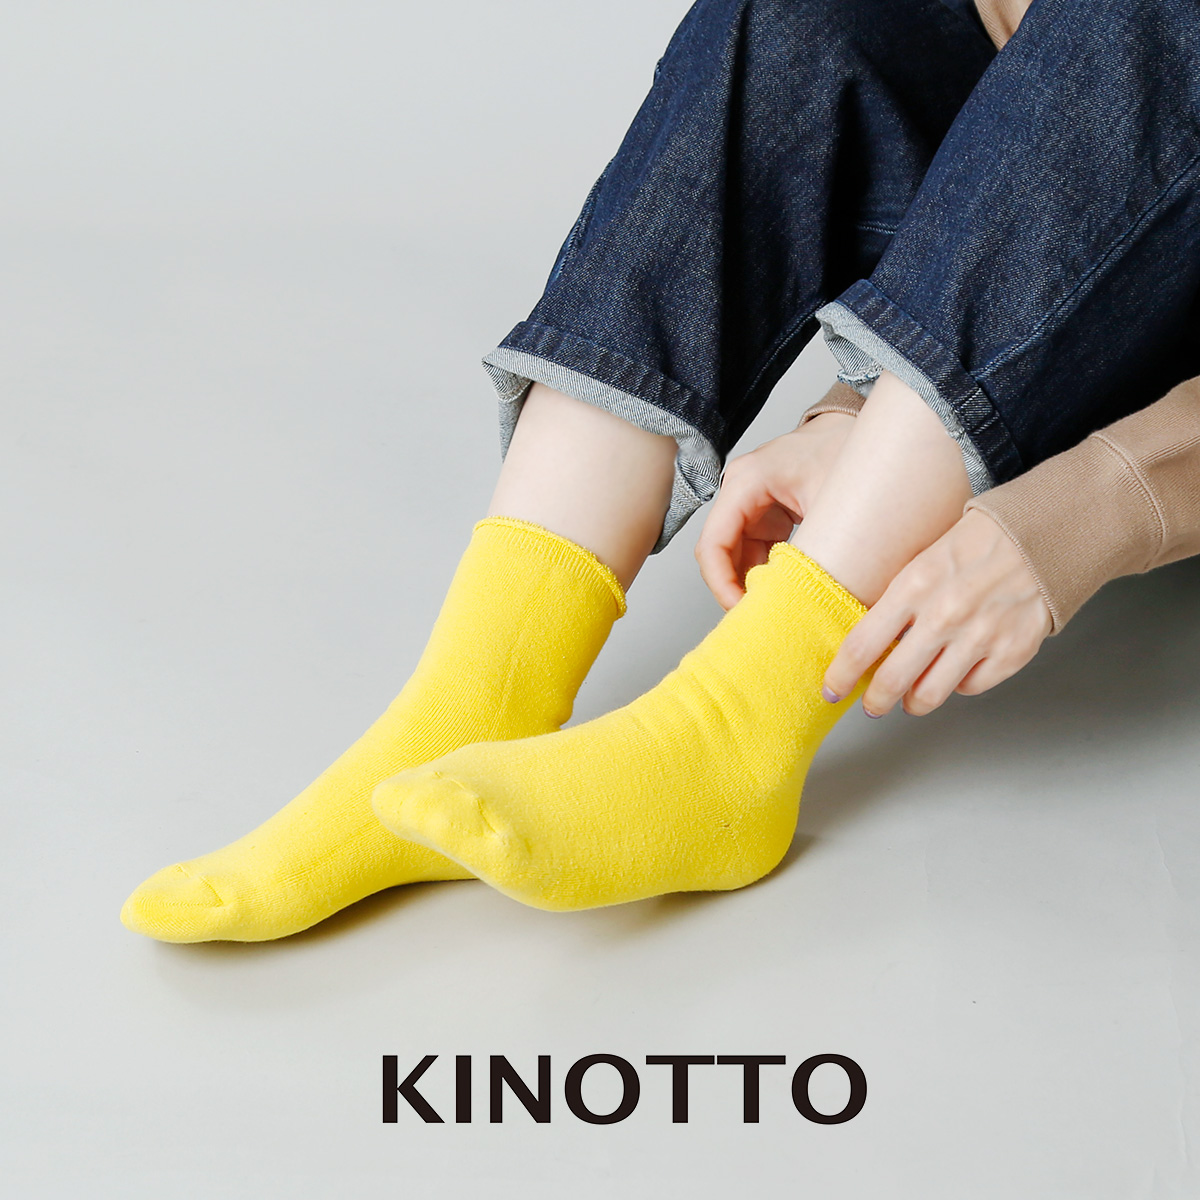 KINOTTO(キノット)リバーシブルパイルソックス 251a-02